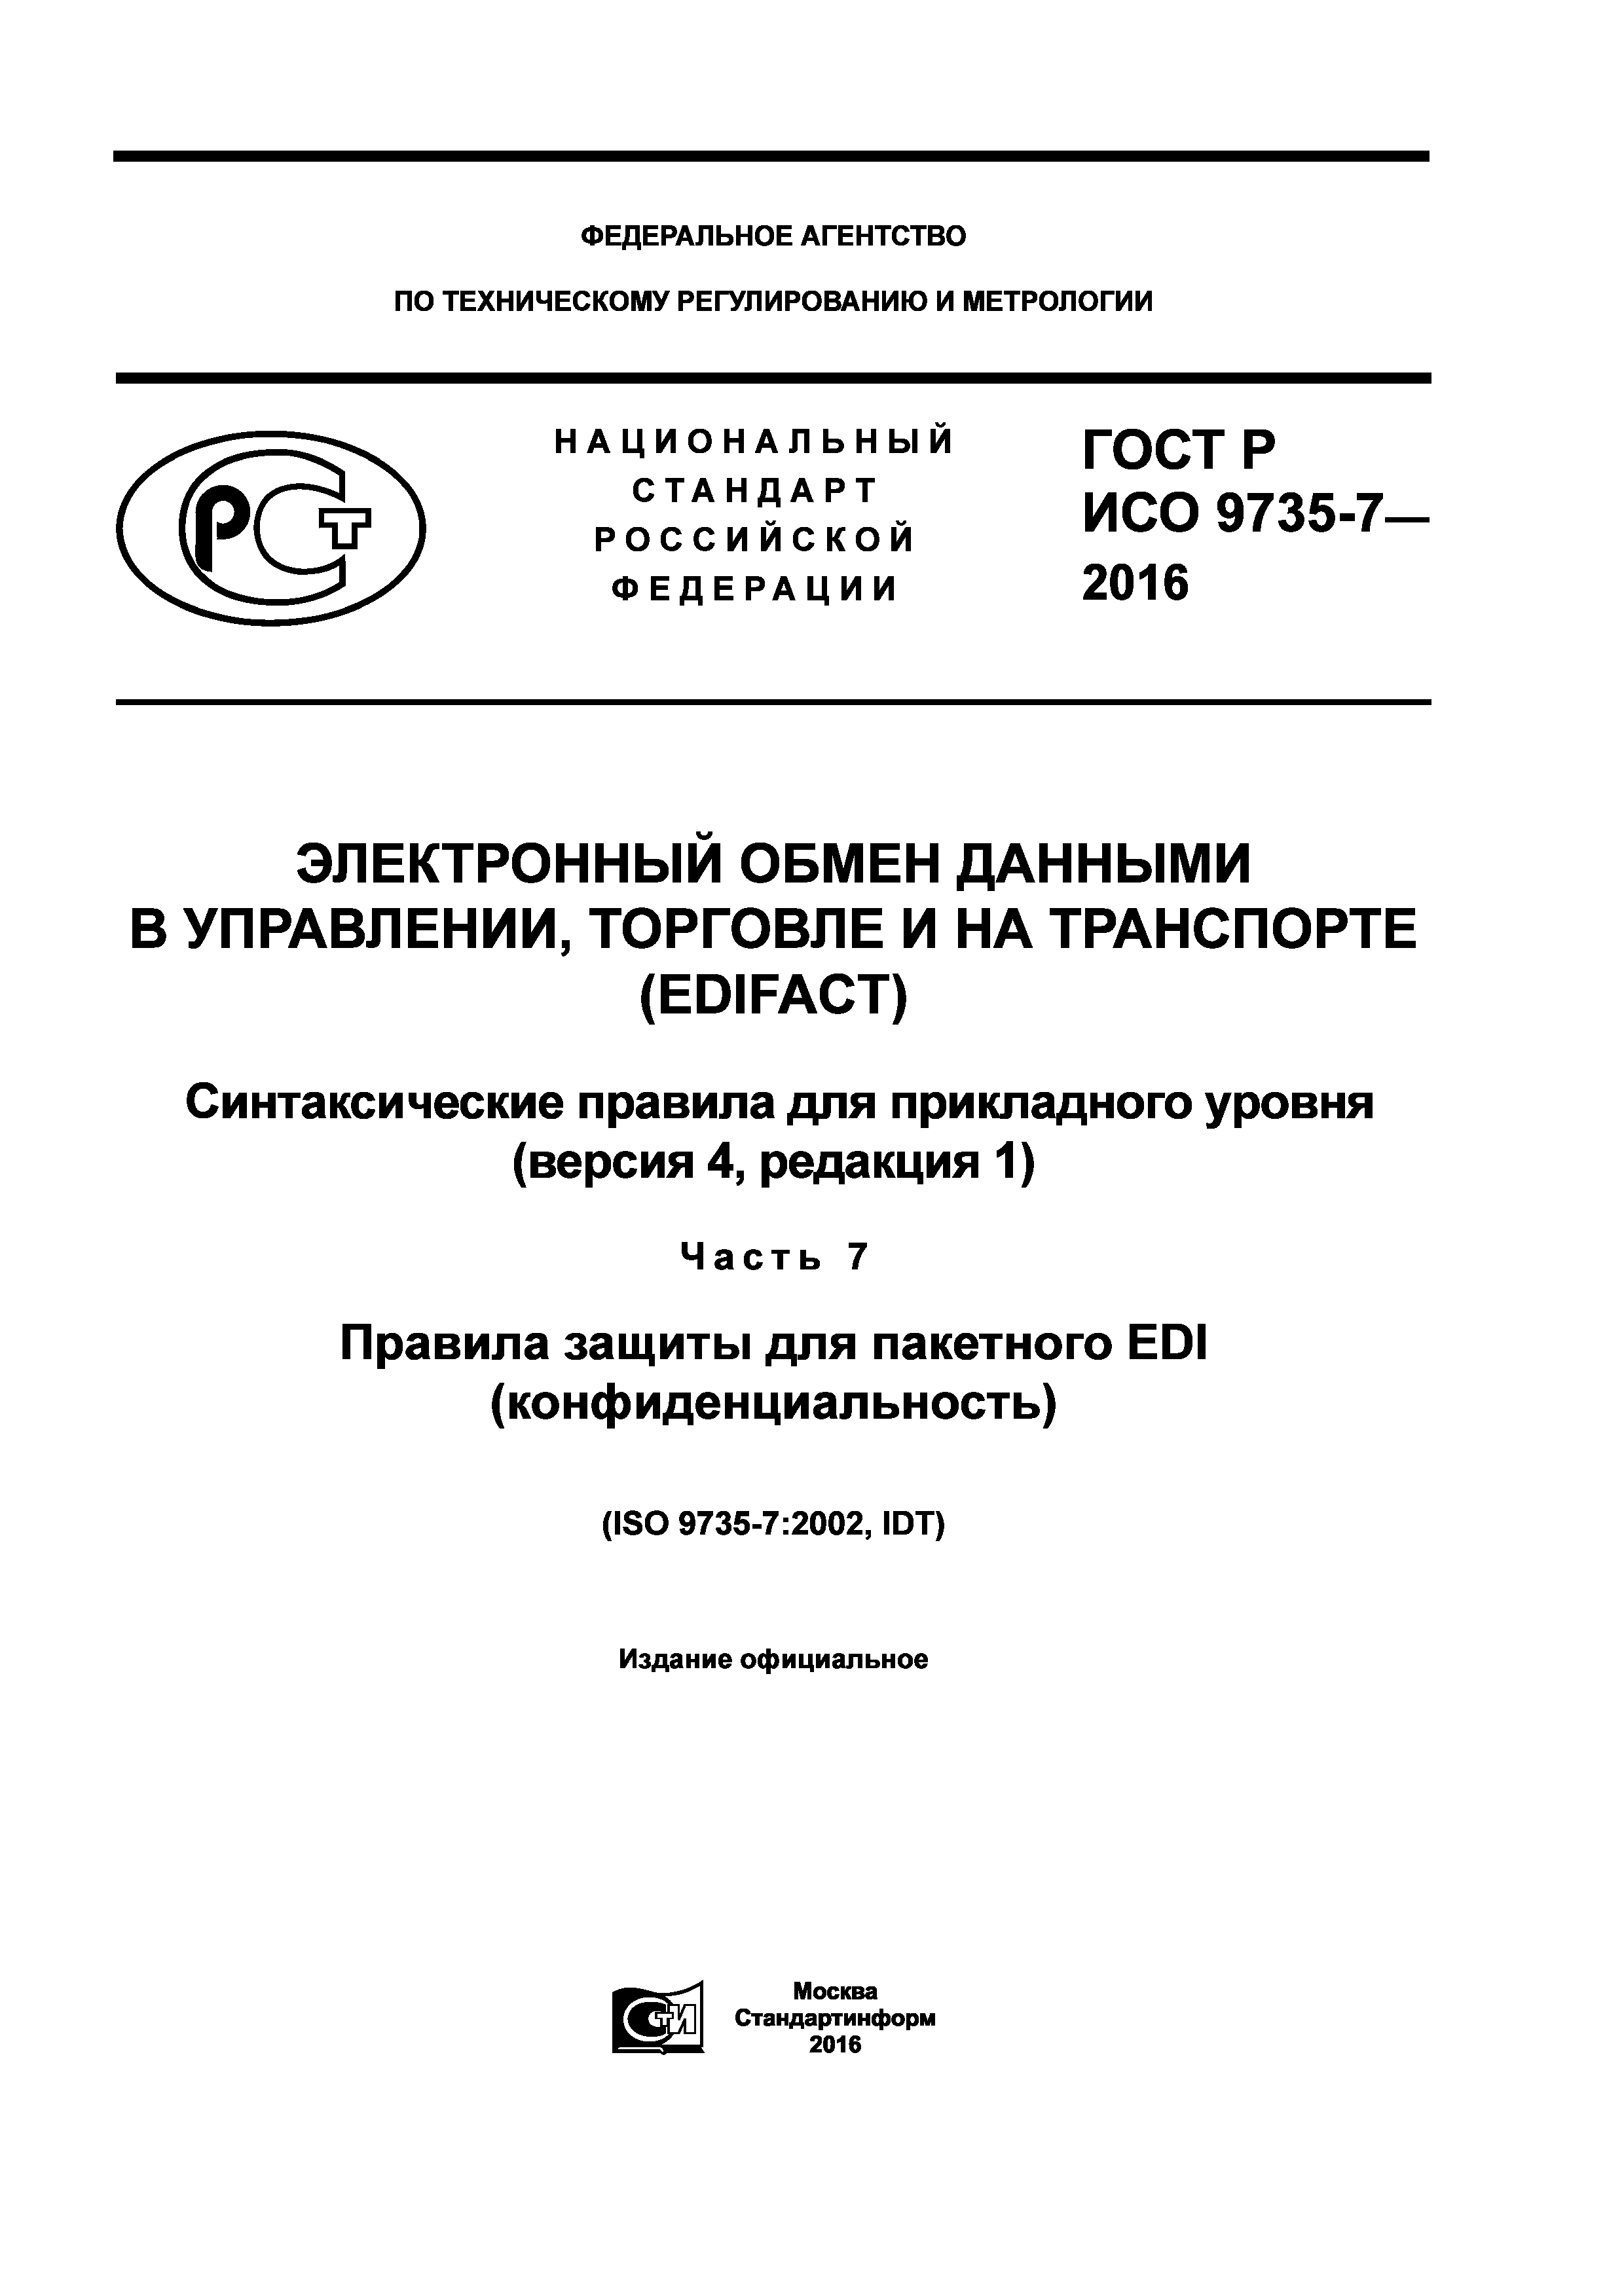 ГОСТ Р ИСО 9735-7-2016